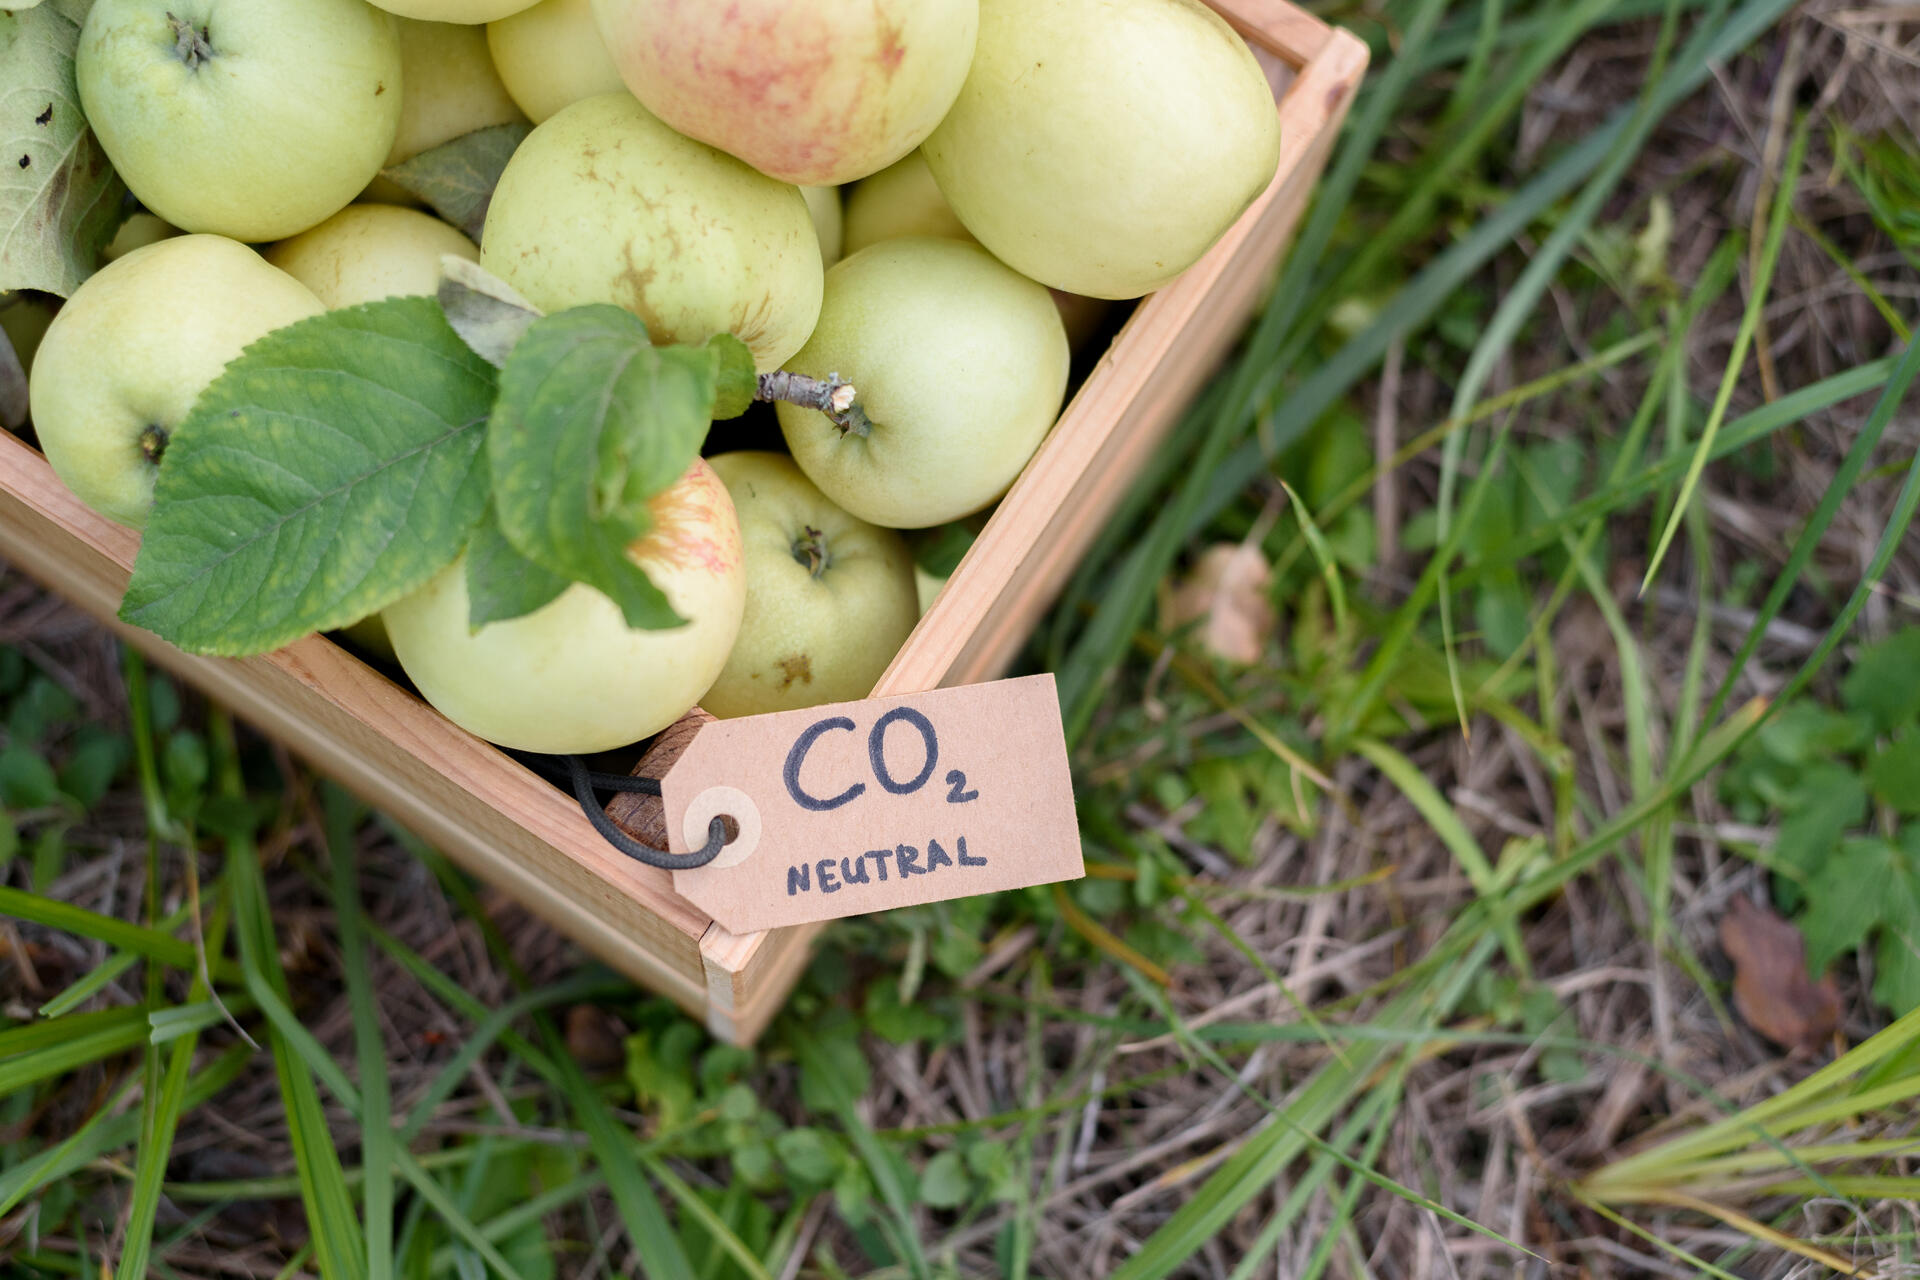 Sakupljanje i skladištenje ugljenika: „lokalne“ jabuke sa oznakom neutralnosti ugljenika